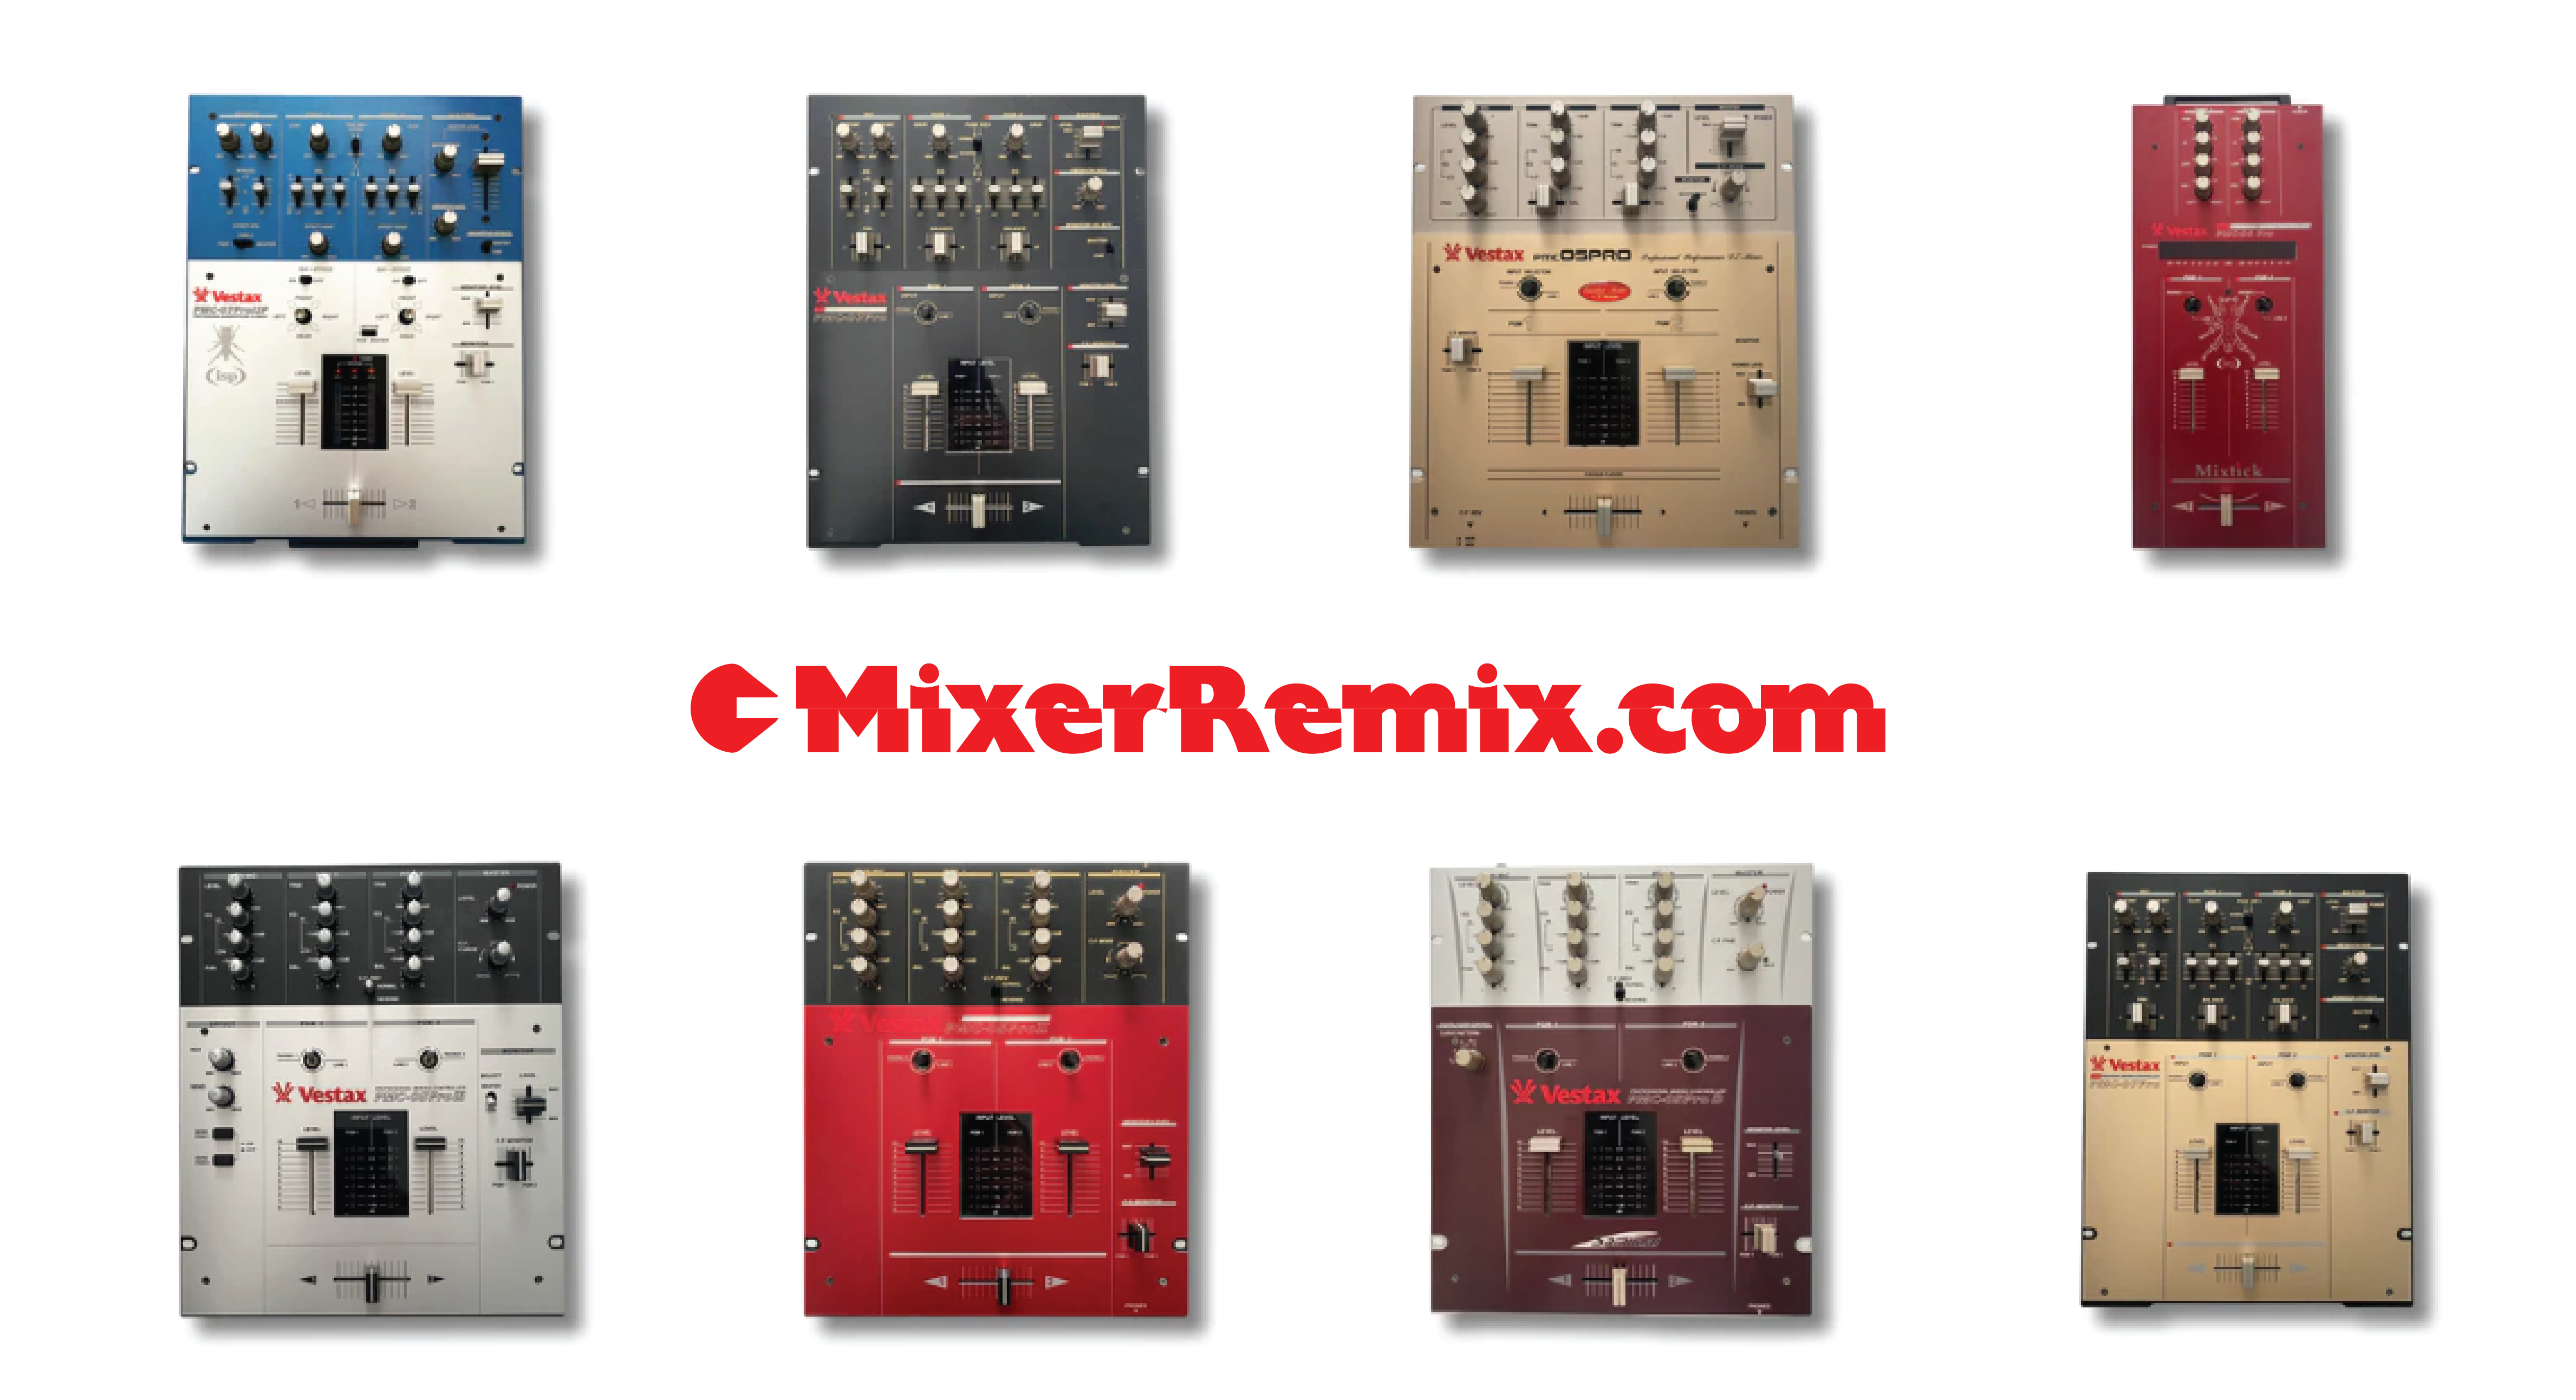 Service Manuals – MixerRemix